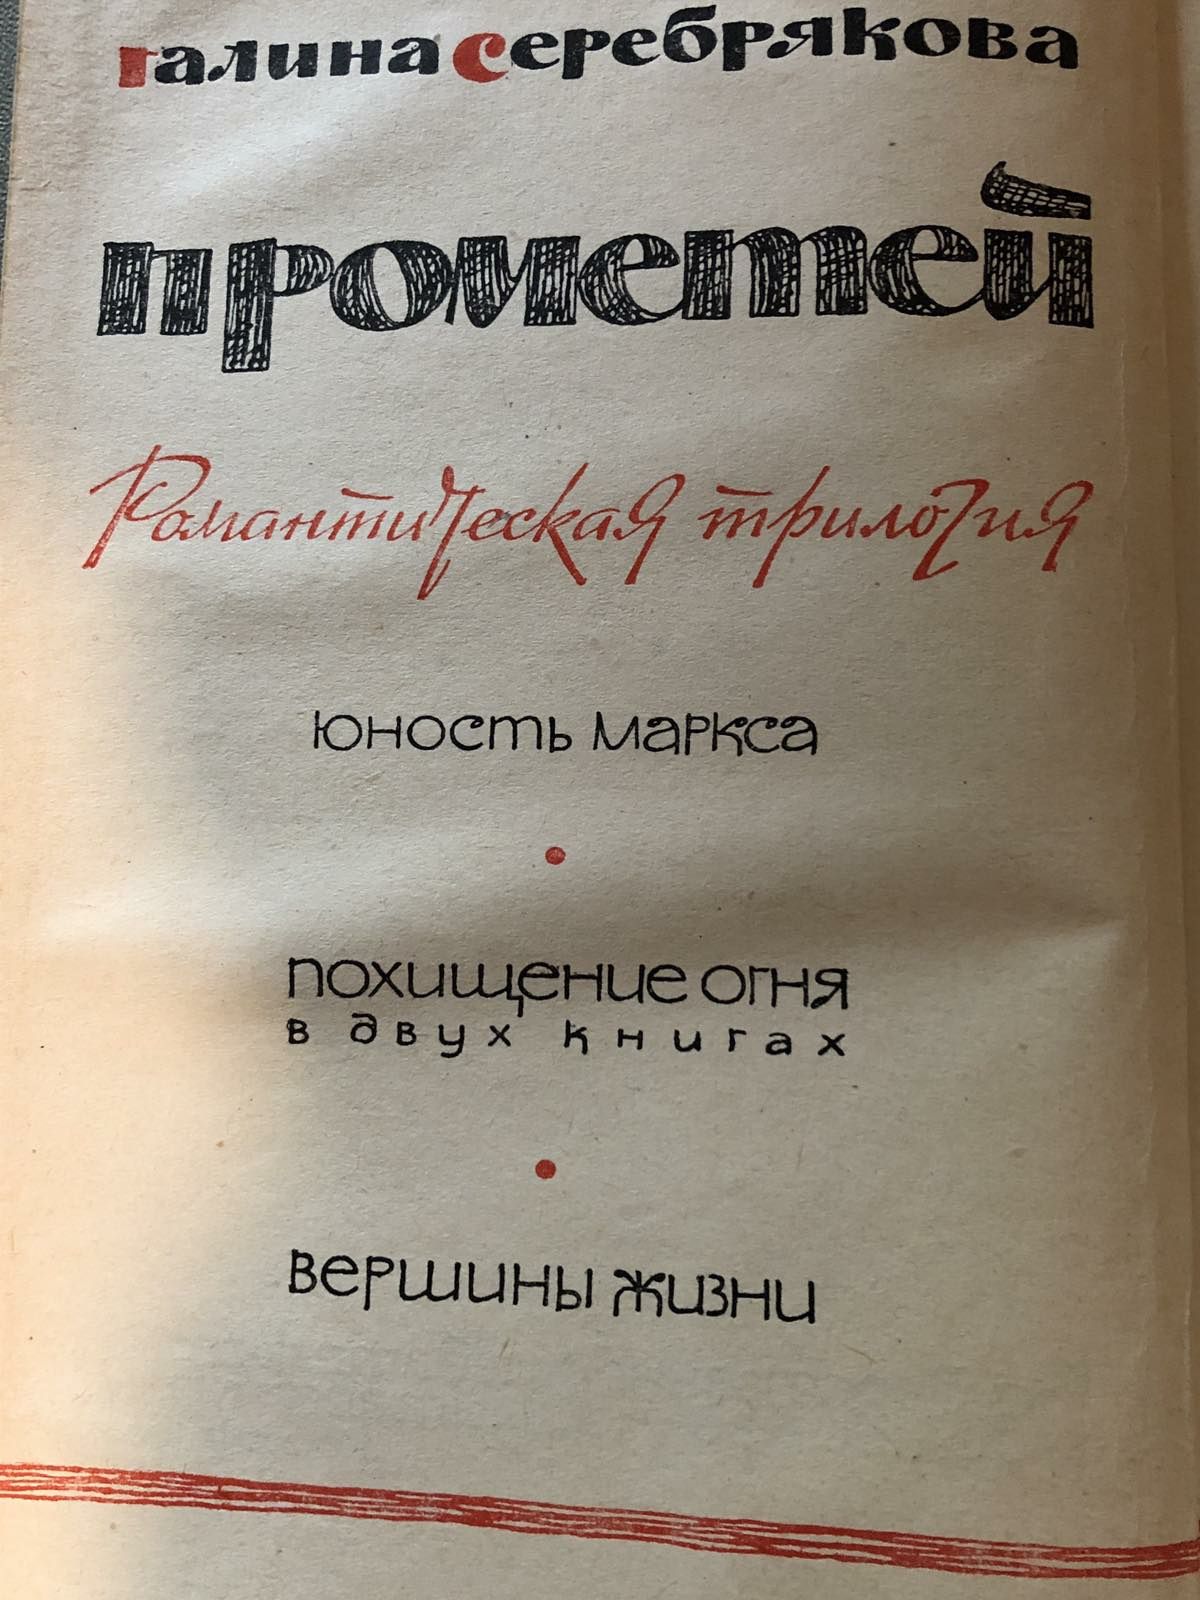 Галина Серебрякова в 2 томах